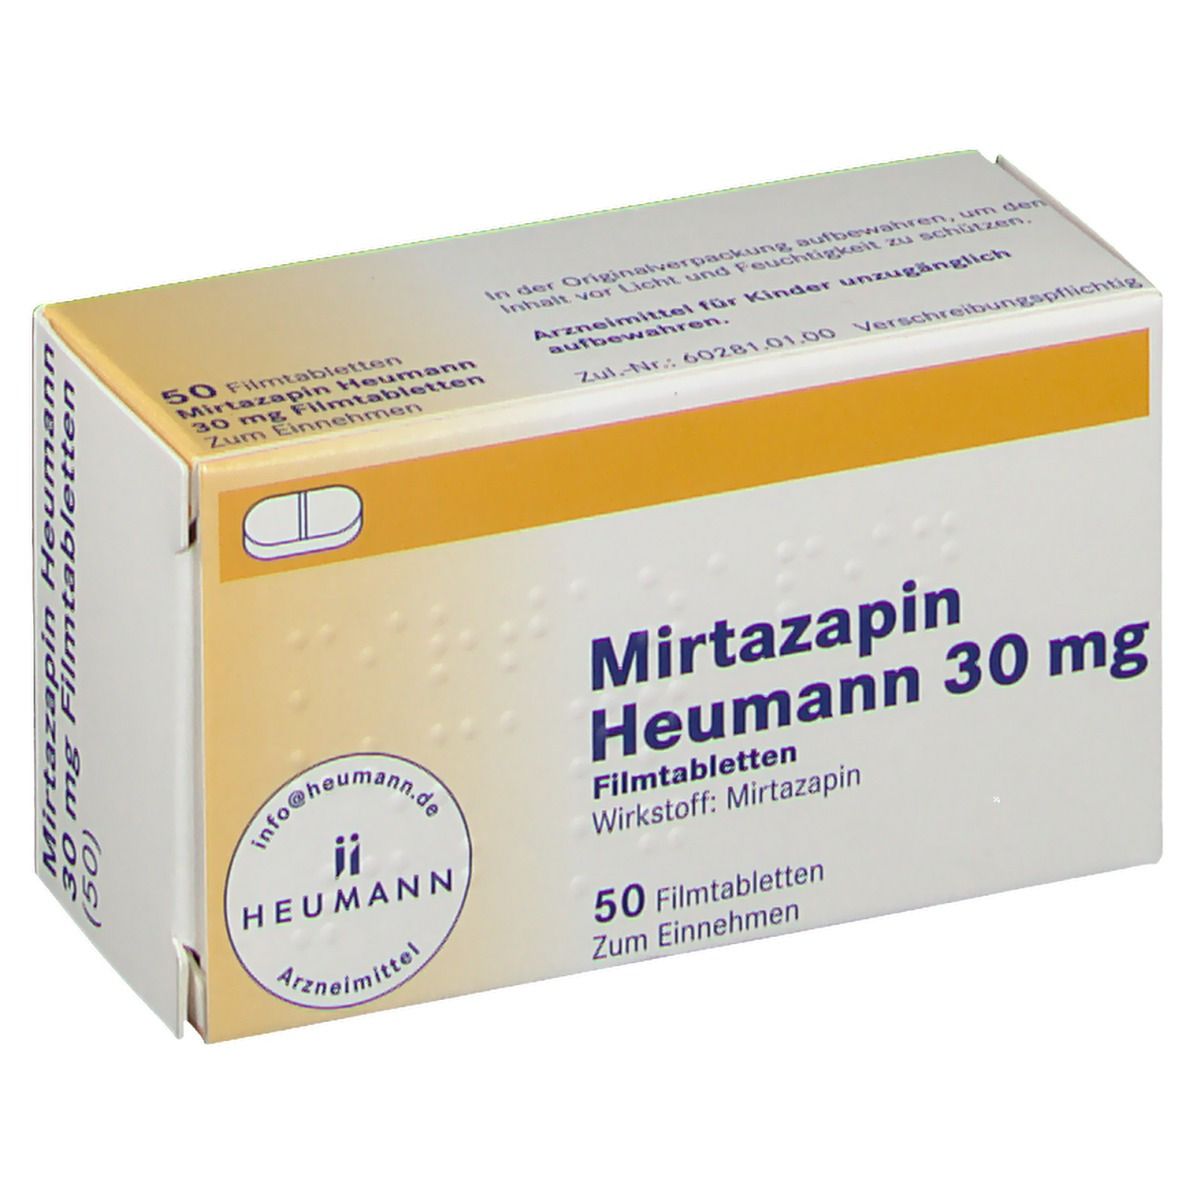 Mirtazapin Heumann 30 mg